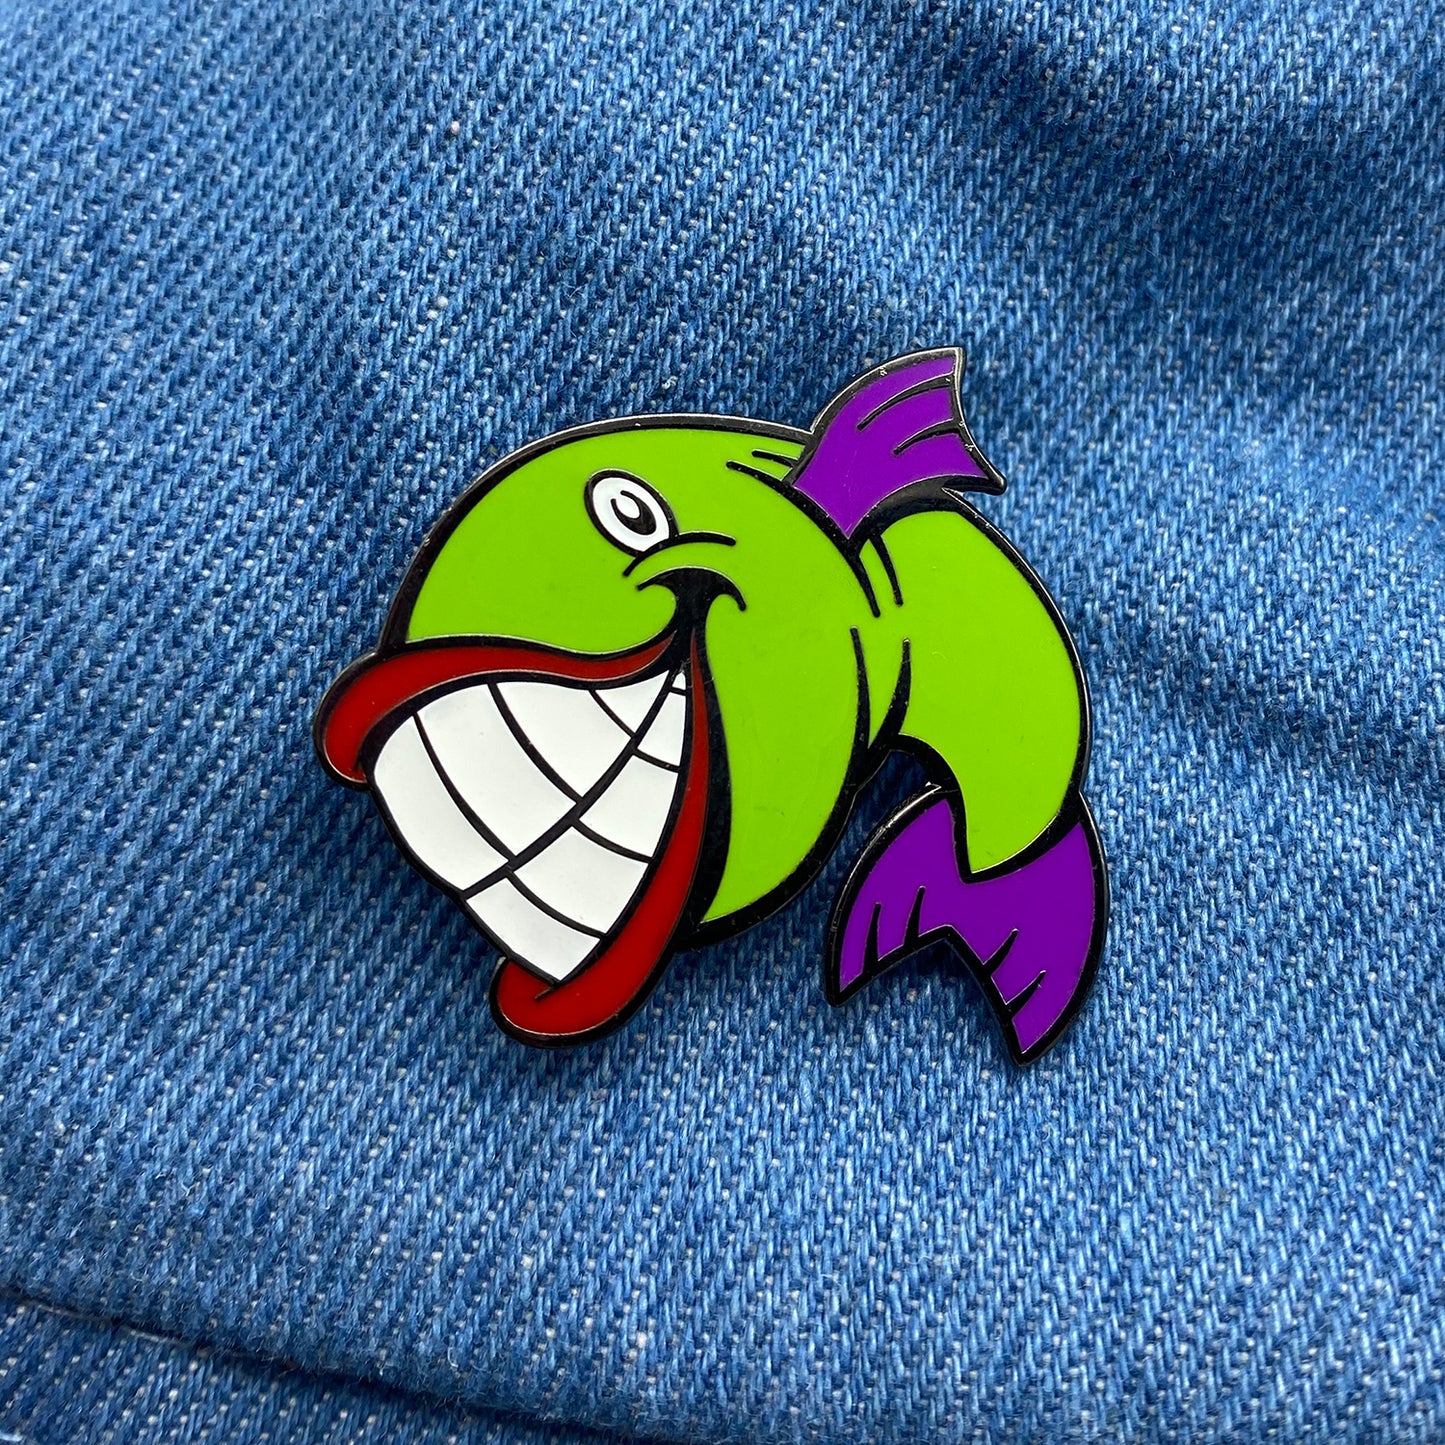 Laughing Fish 1.25" hard enamel pin